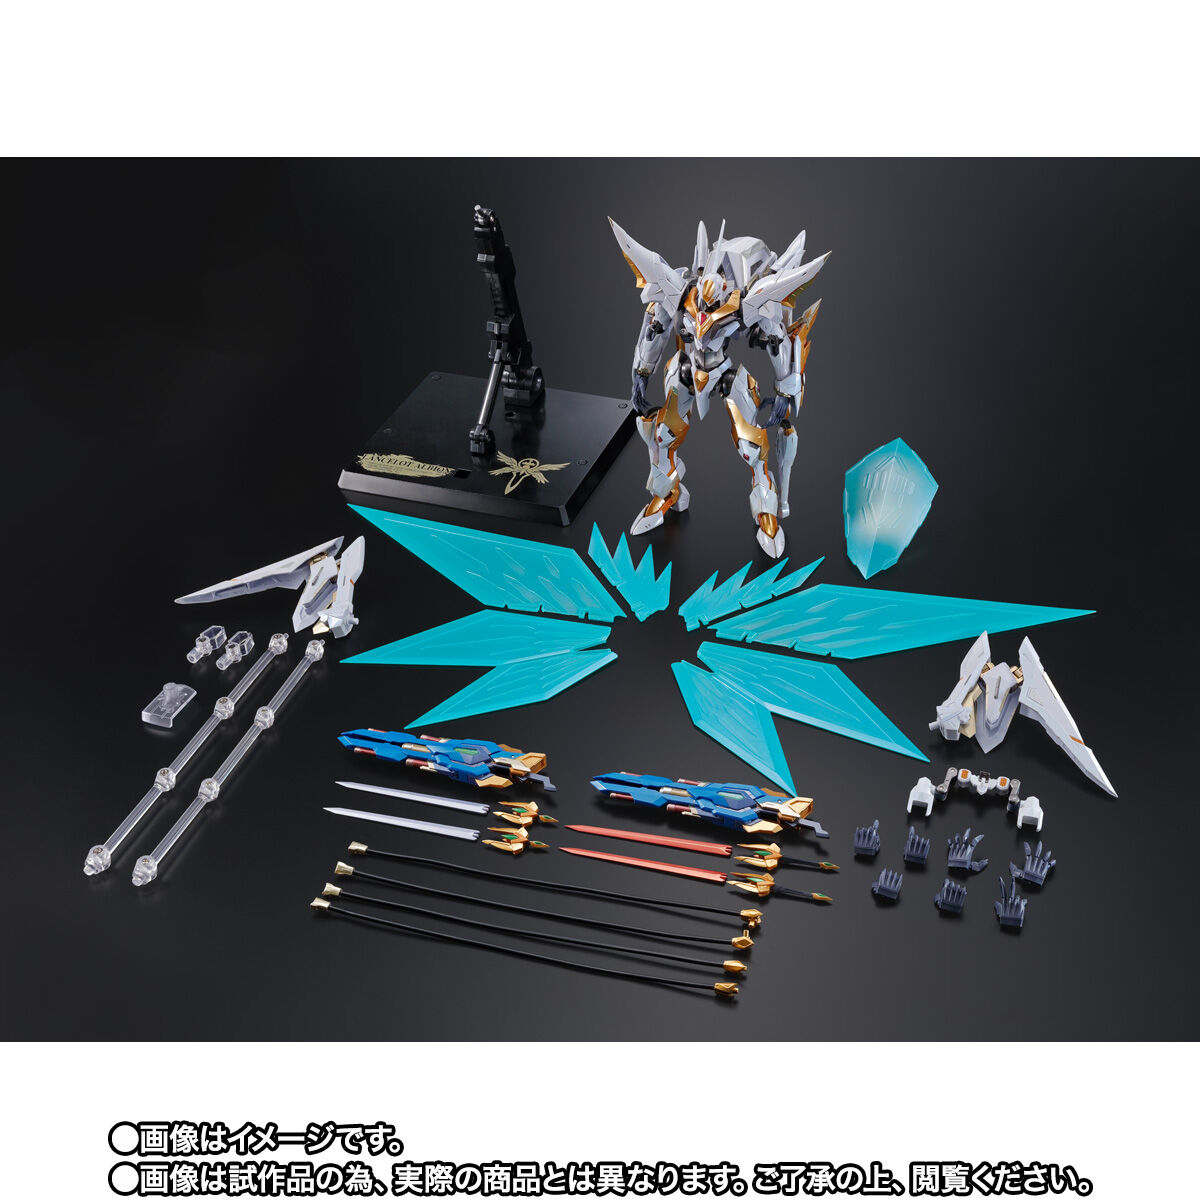 【限定販売】METAL BUILD DRAGON SCALE『ランスロット・アルビオン』コードギアス 反逆のルルーシュR2 可動フィギュア-010